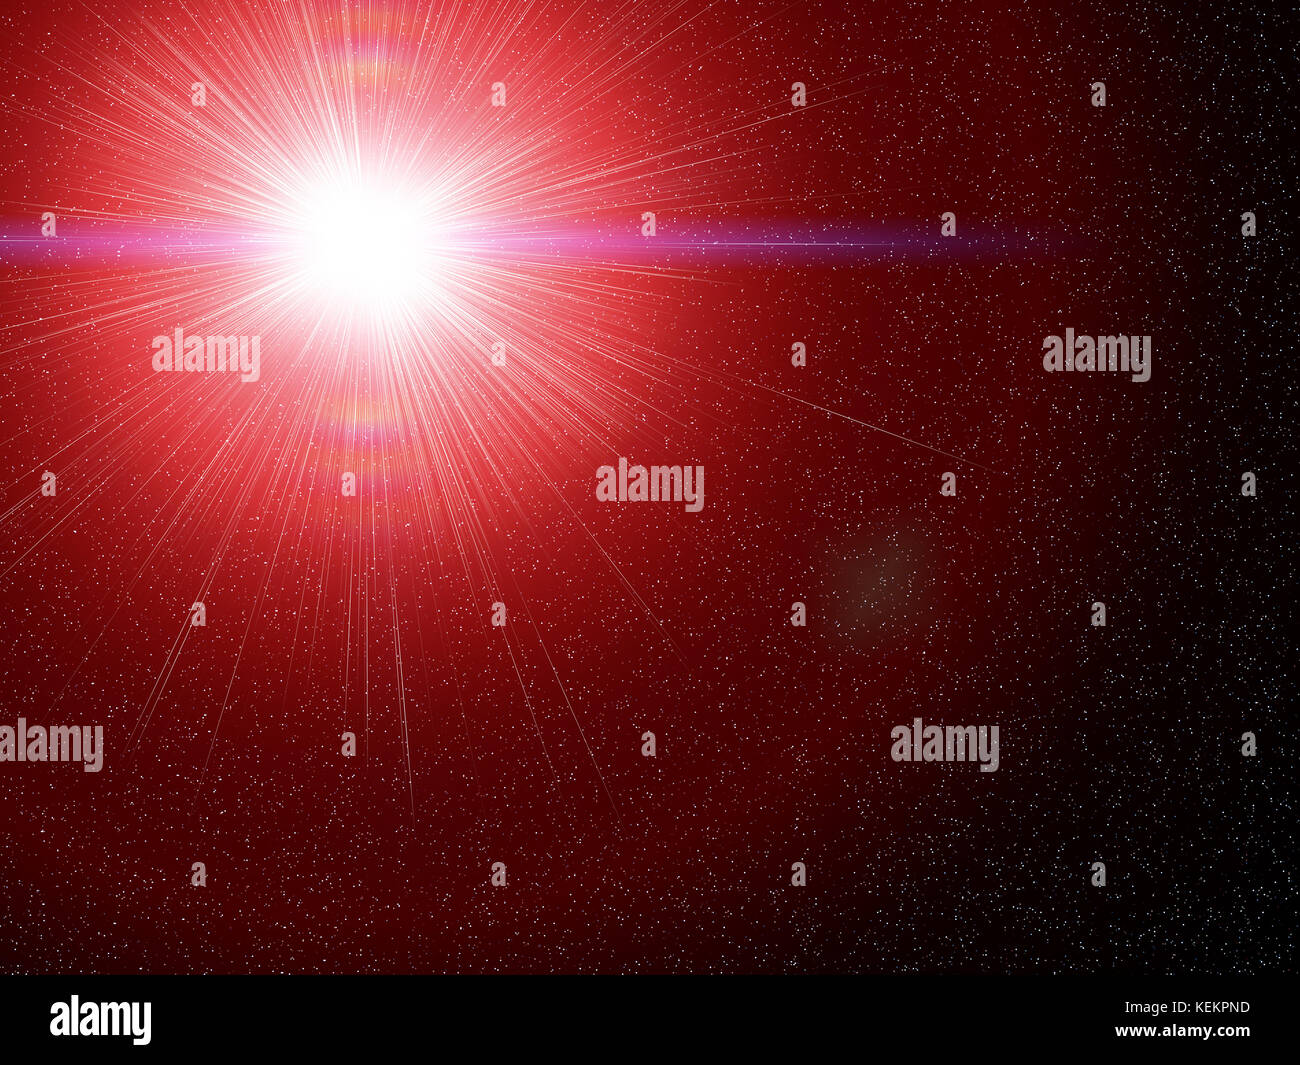 Résumé fond texture illustration avec vue artistique sur star supernova explosion dans l'espace profond nébuleuse. orientation paysage. Banque D'Images